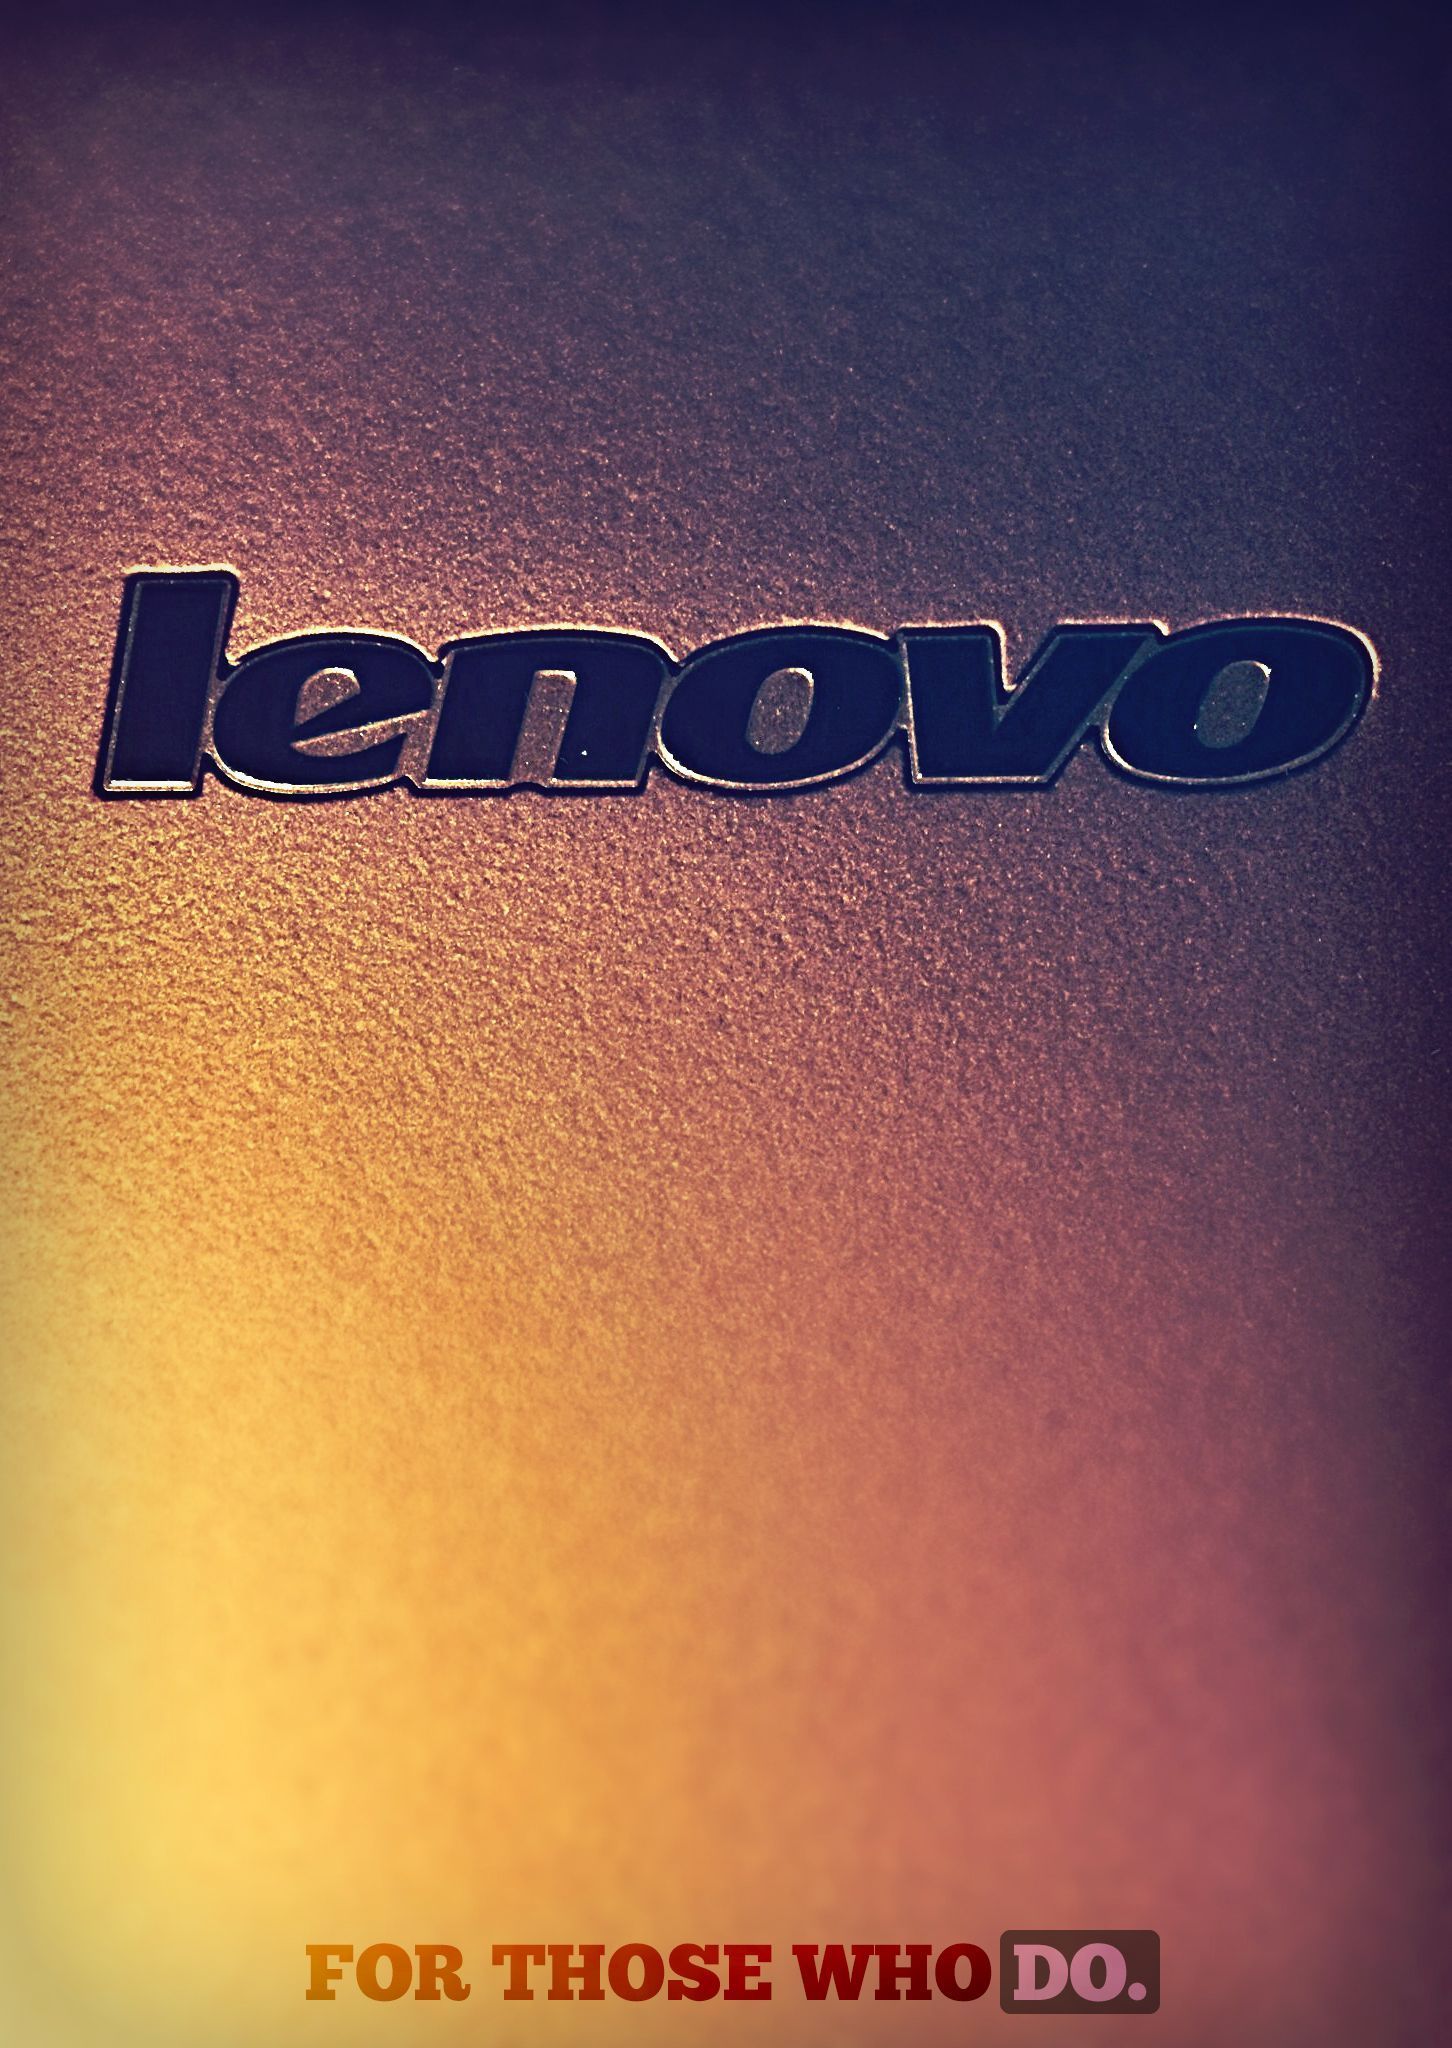 Mobile Lenovo Wallpaper | Full HD Pictures